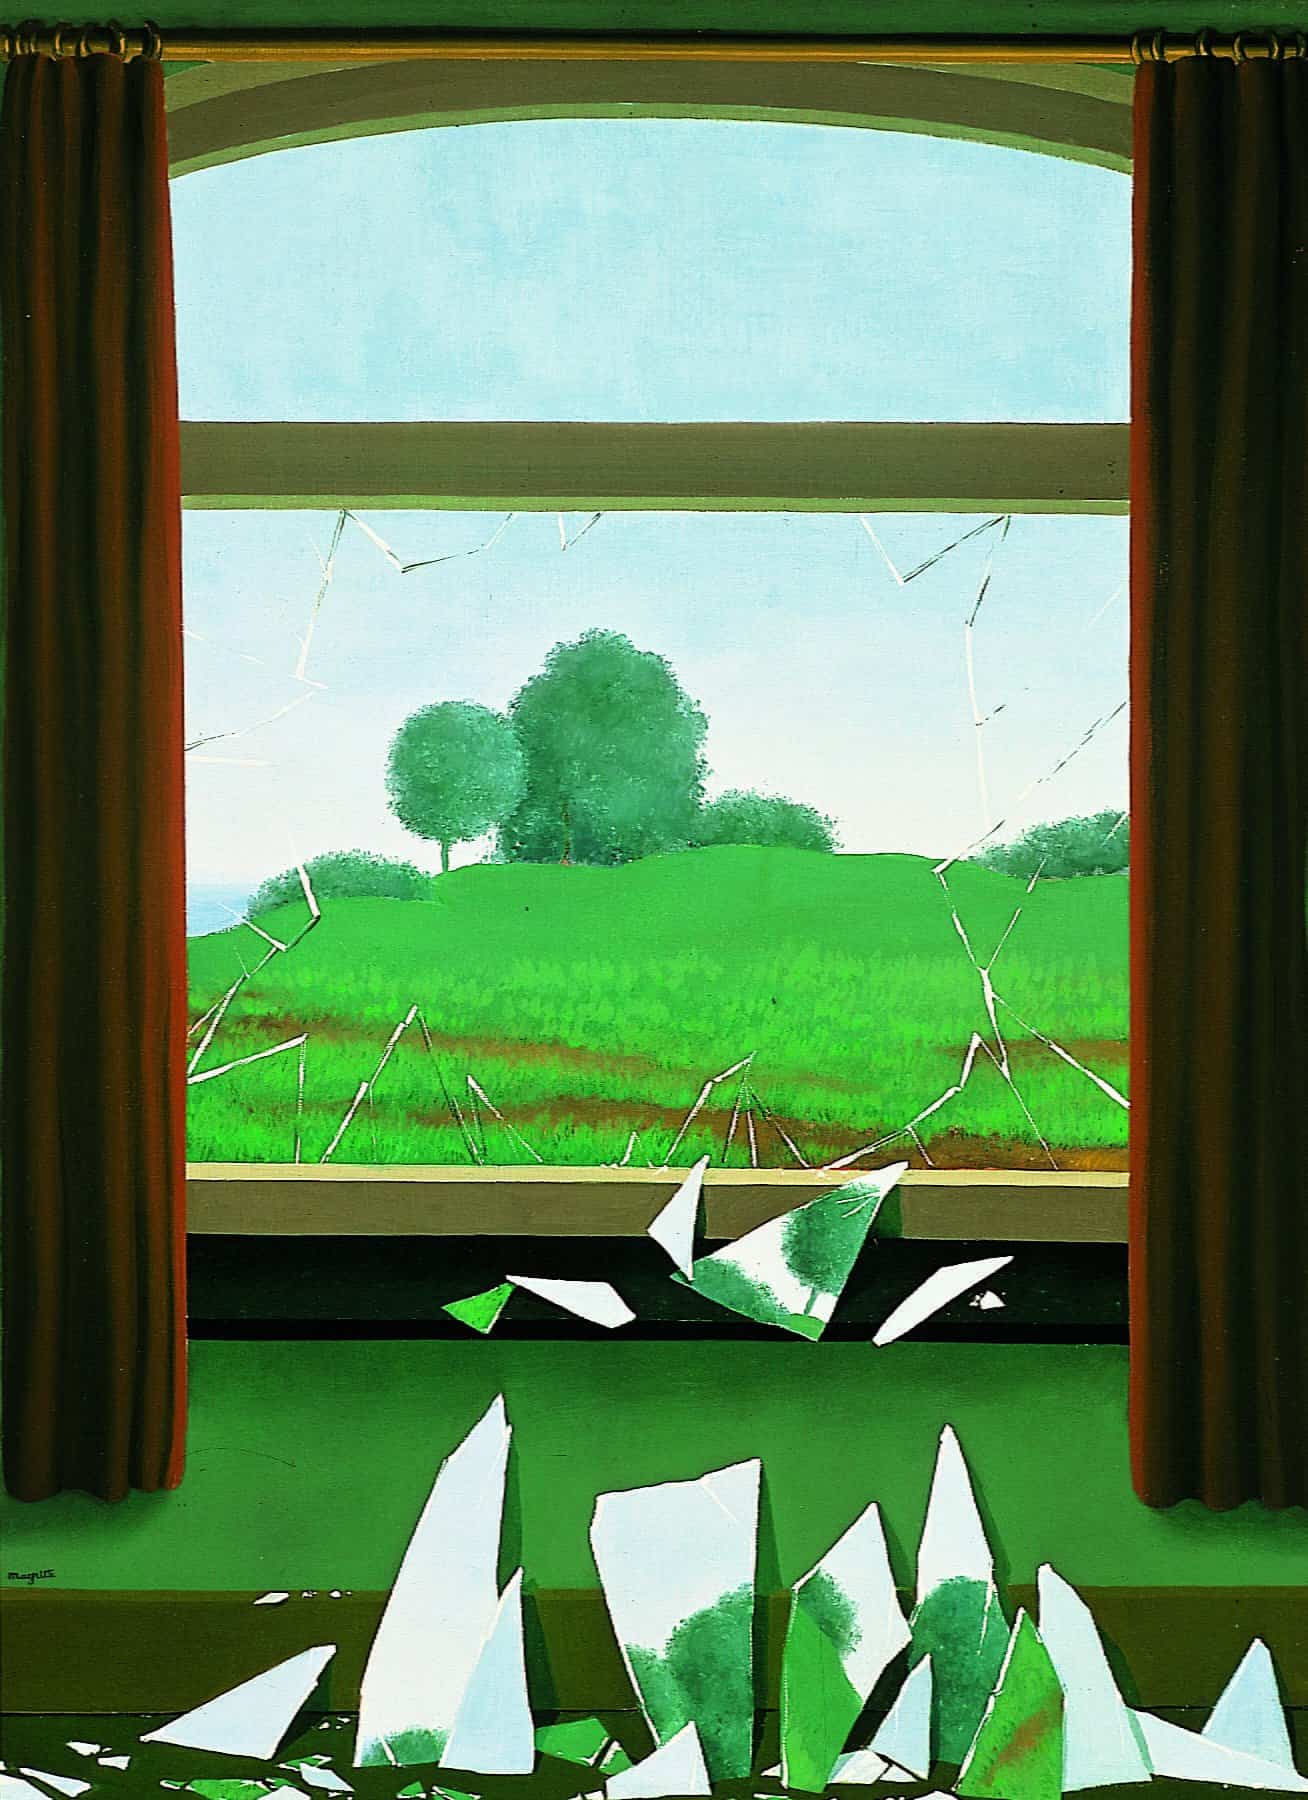 René MAGRITTE The key to the fields La clef des champs De sleutel tot de velden 1936 oil on canvas 80 x 60 cm Museo Nacional Thyssen-Bornemisza, Madrid, inv. no. 657 (1976.3) ©VEGAP, Madrid © 2019, Succession Magritte c/o SABAM